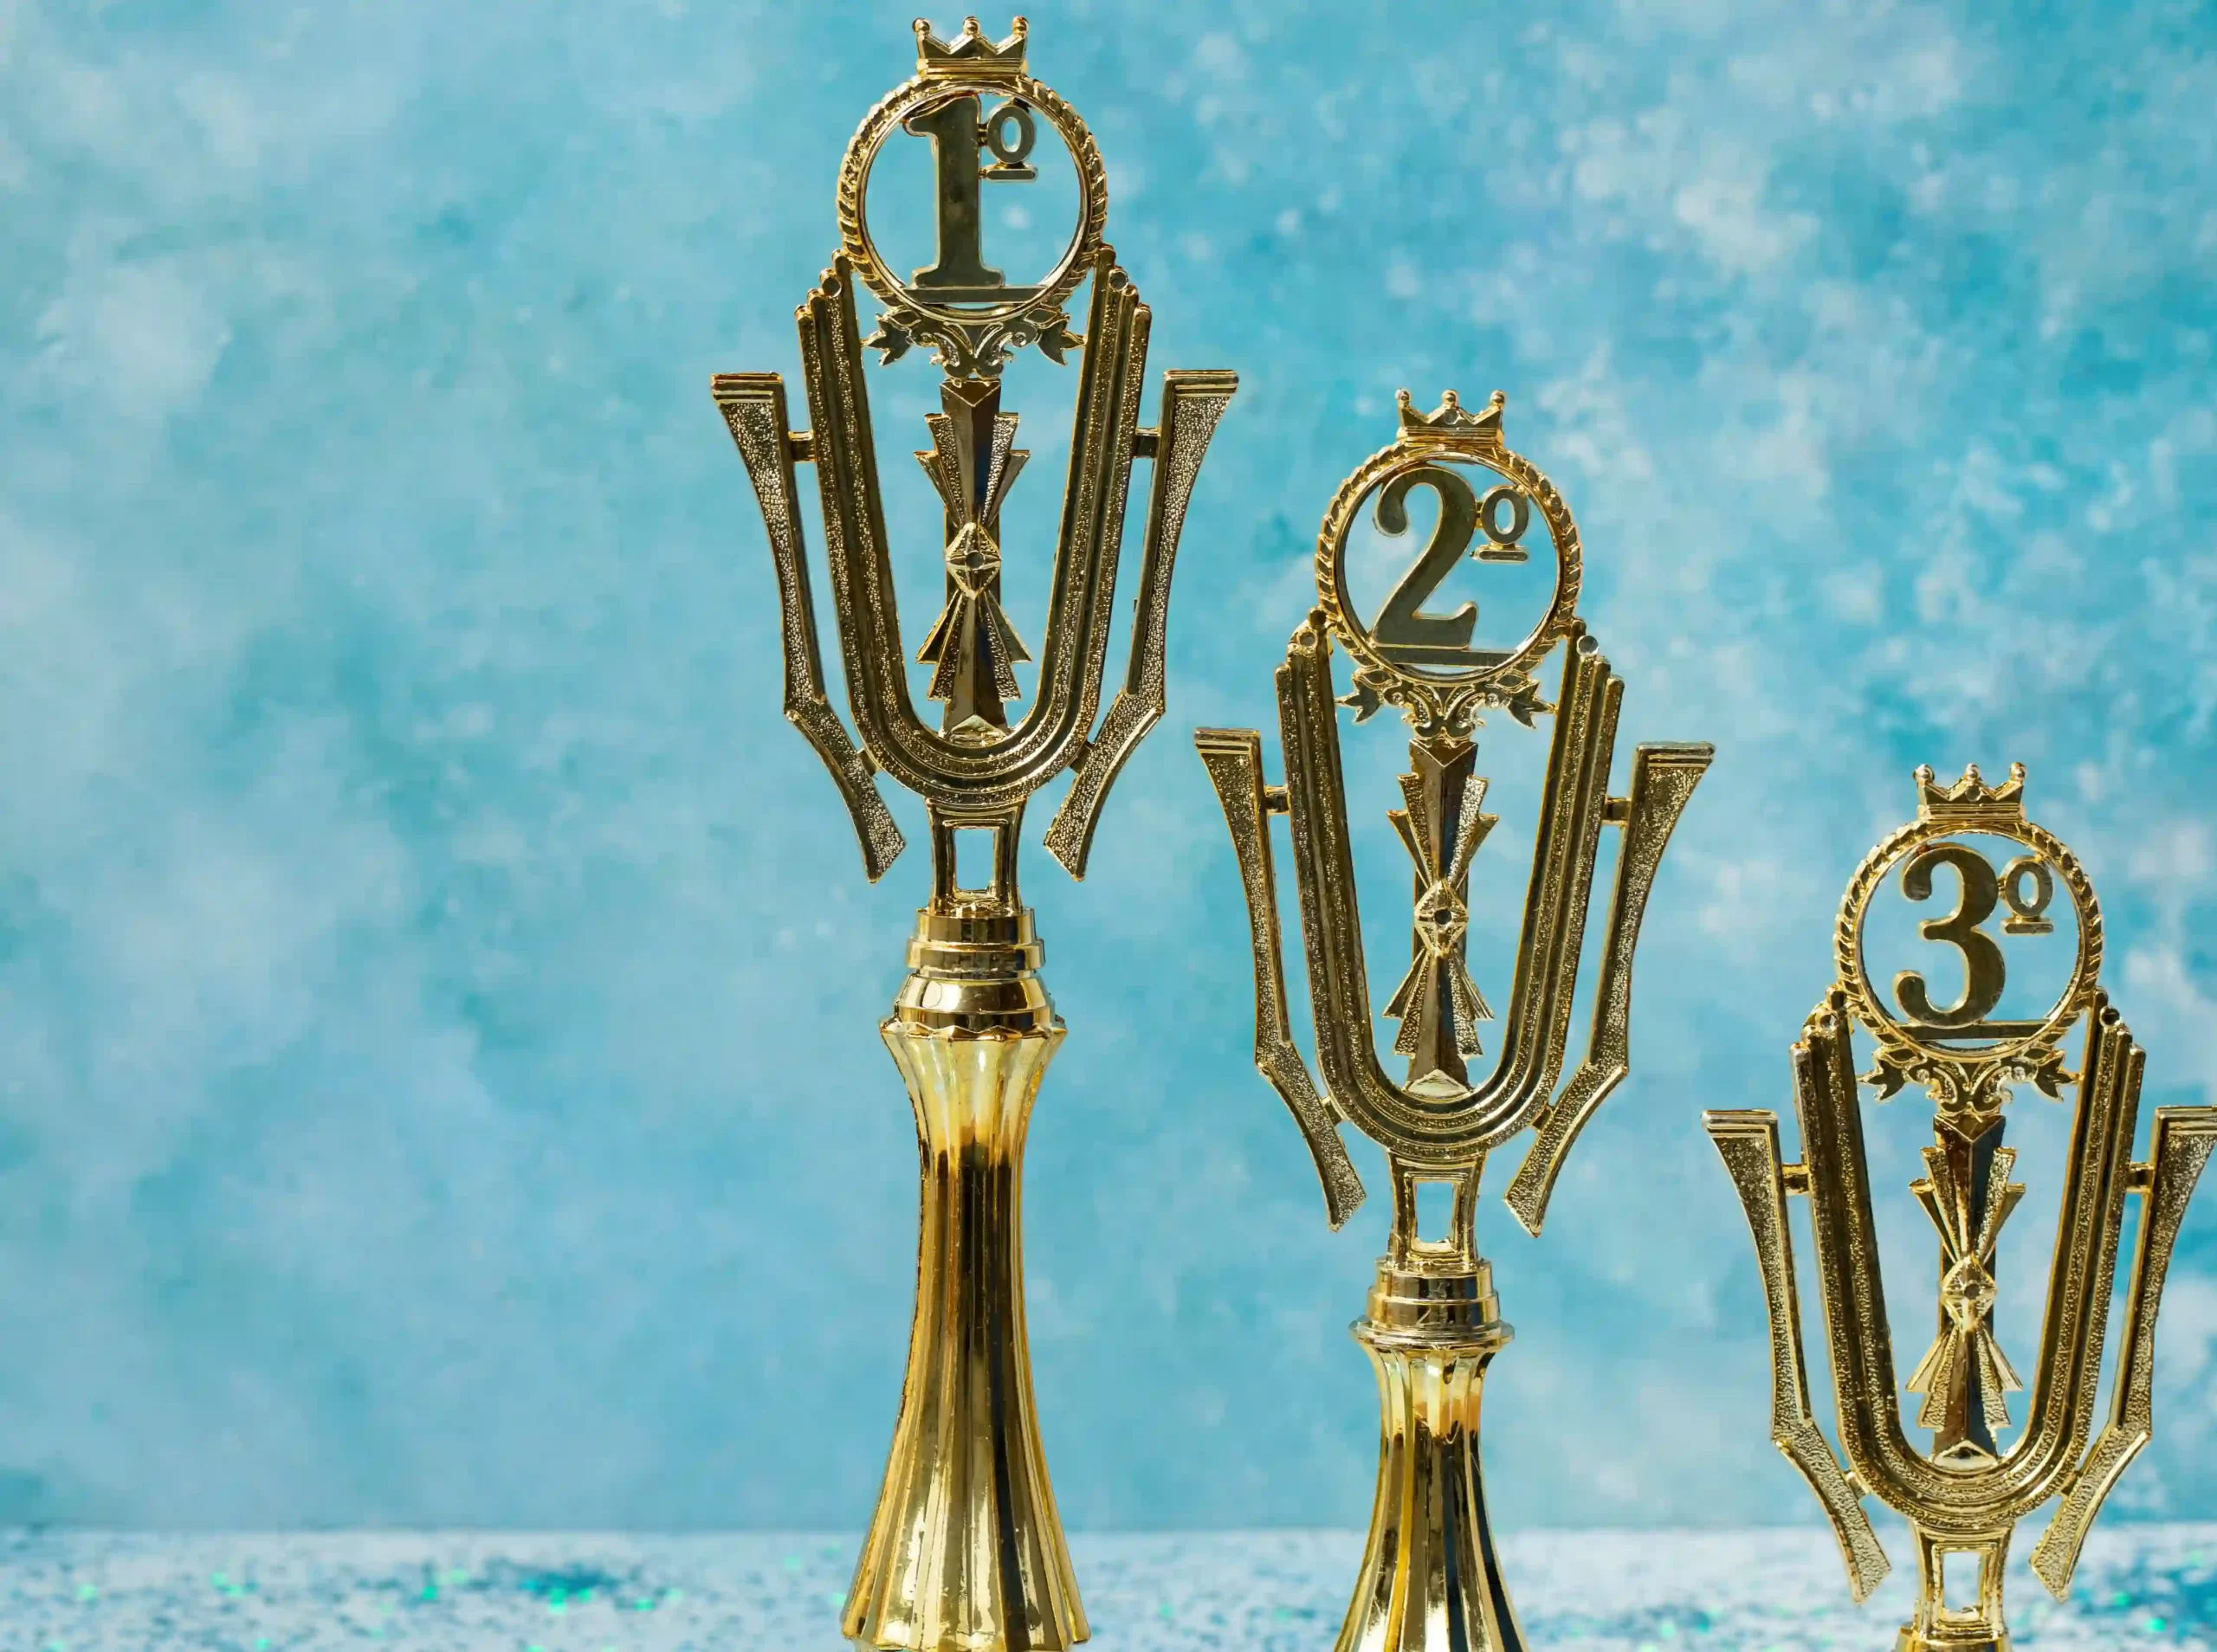 3 golden trophies